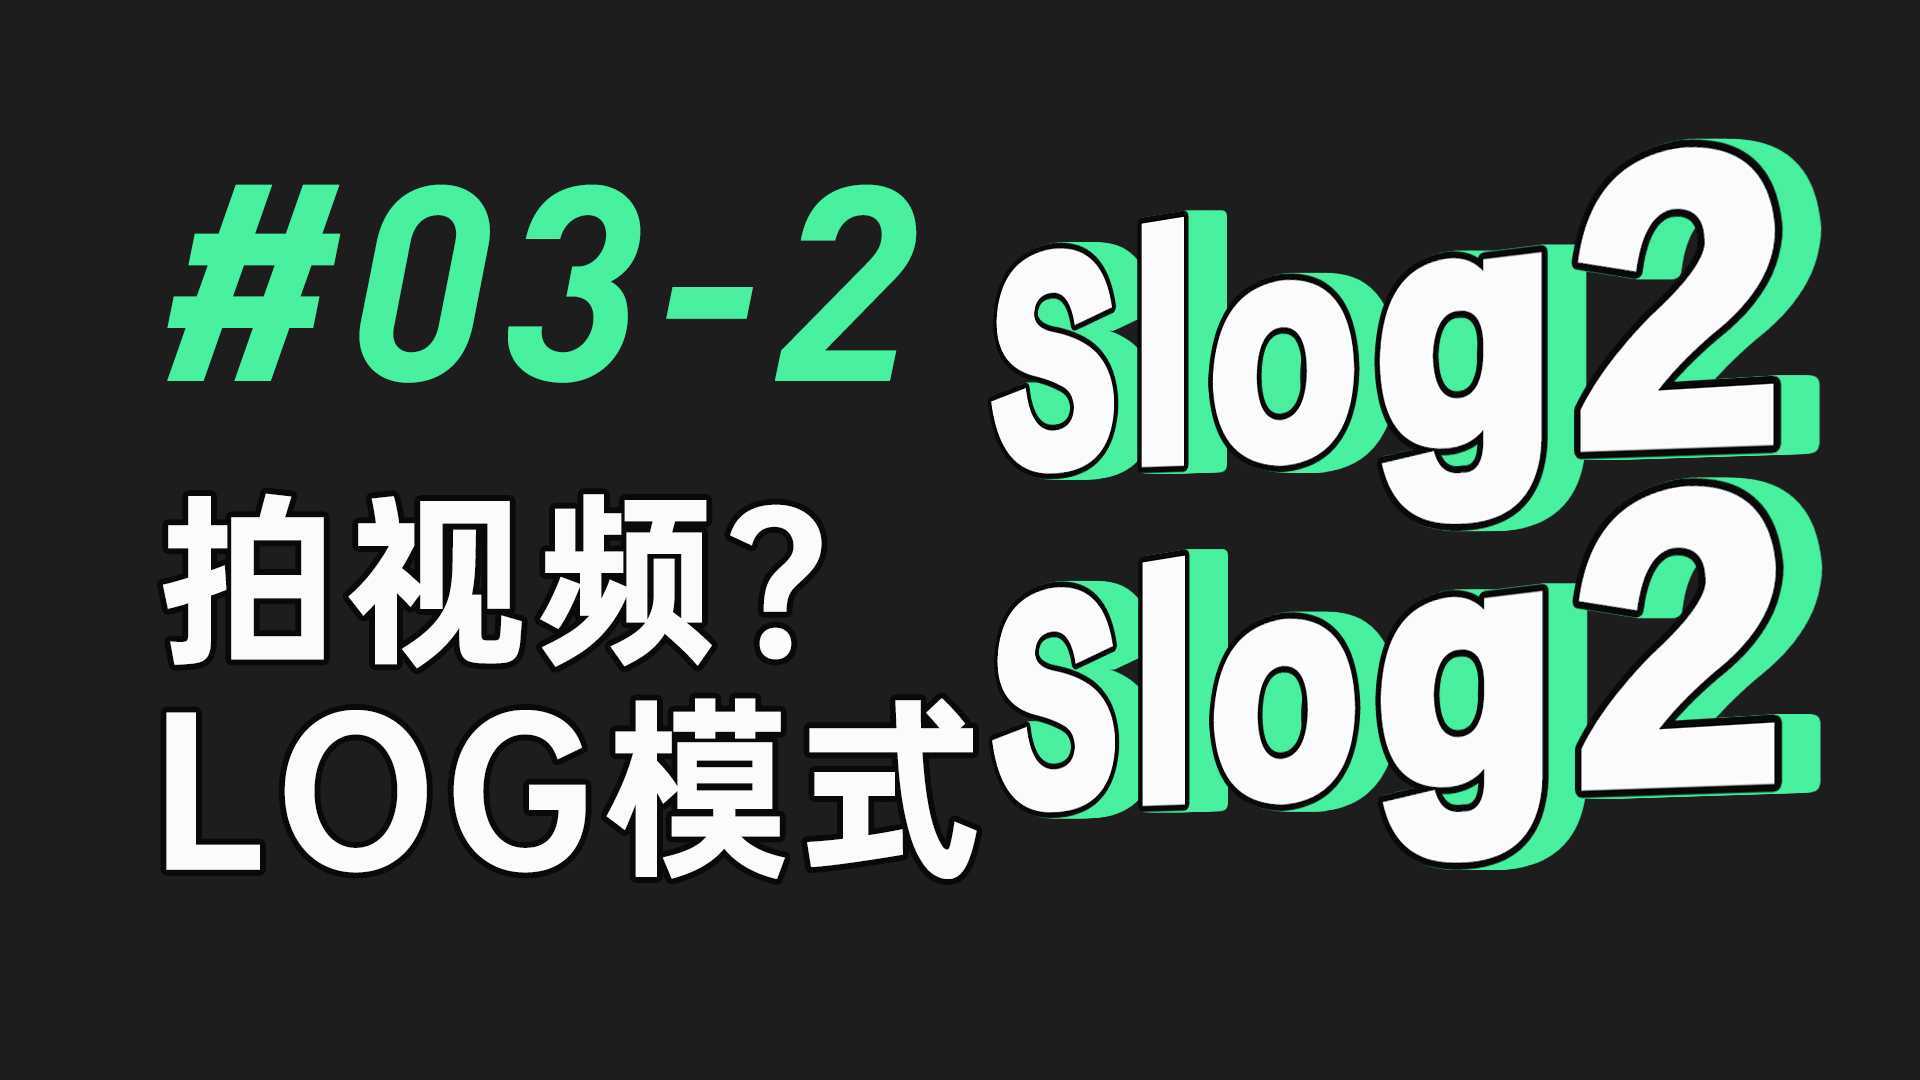 【视频拍摄教程】#03-2 log模式 拍视频用log模式？看完再拍吧！